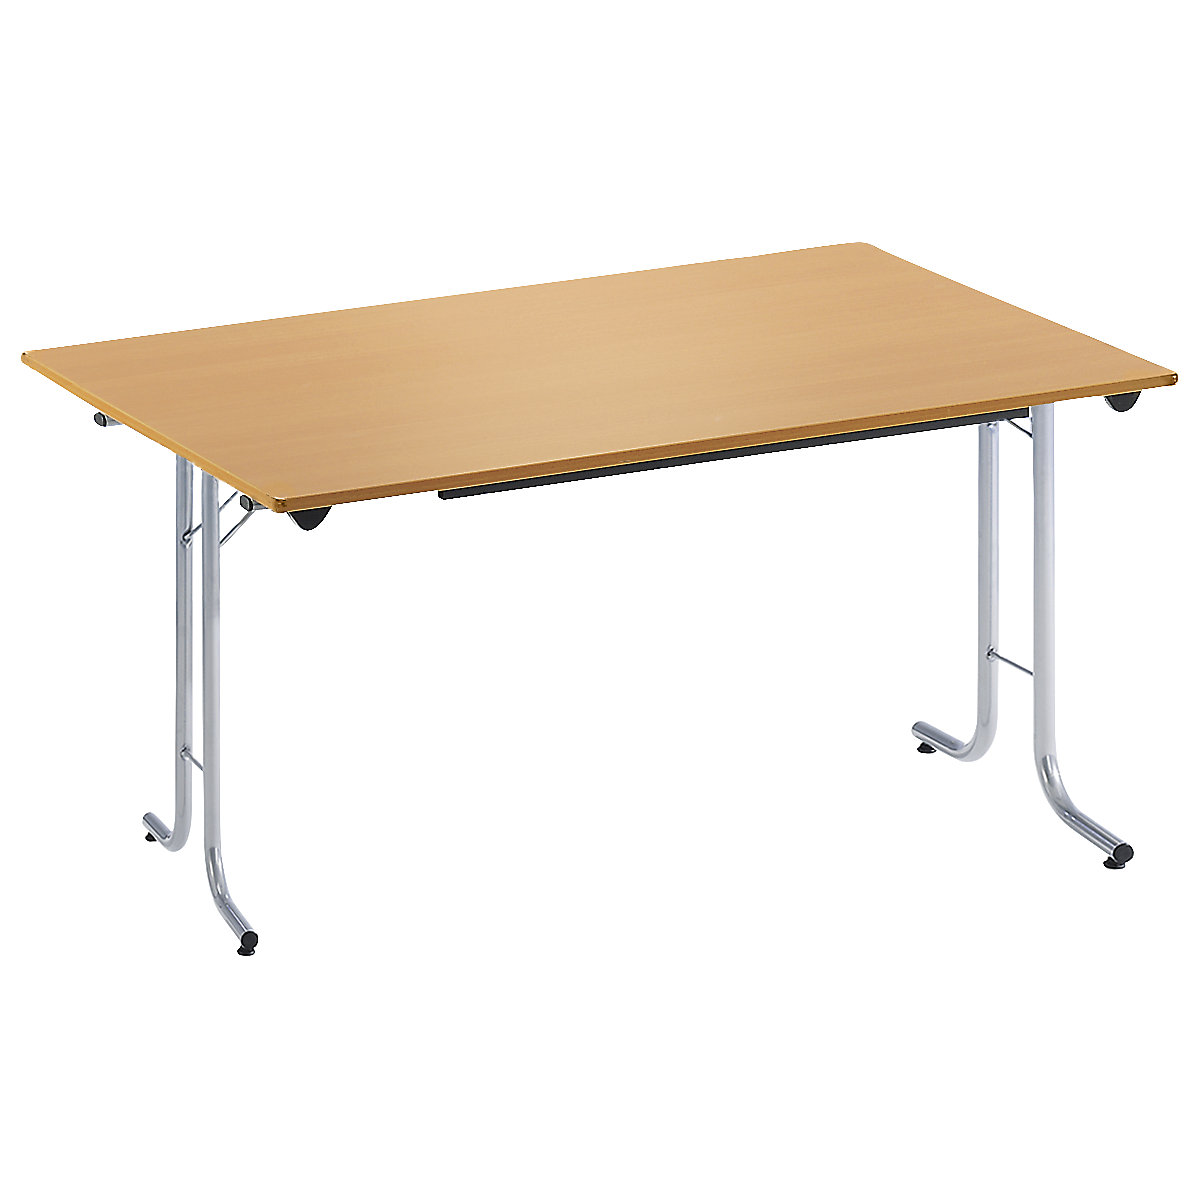 Sklápací stôl, so zaoblenými hranami, podstavec z kruhovej rúrky, tvar dosky obdĺžnikový, 1200 x 700 mm, podstavec strieborná, doska vzor buk-7